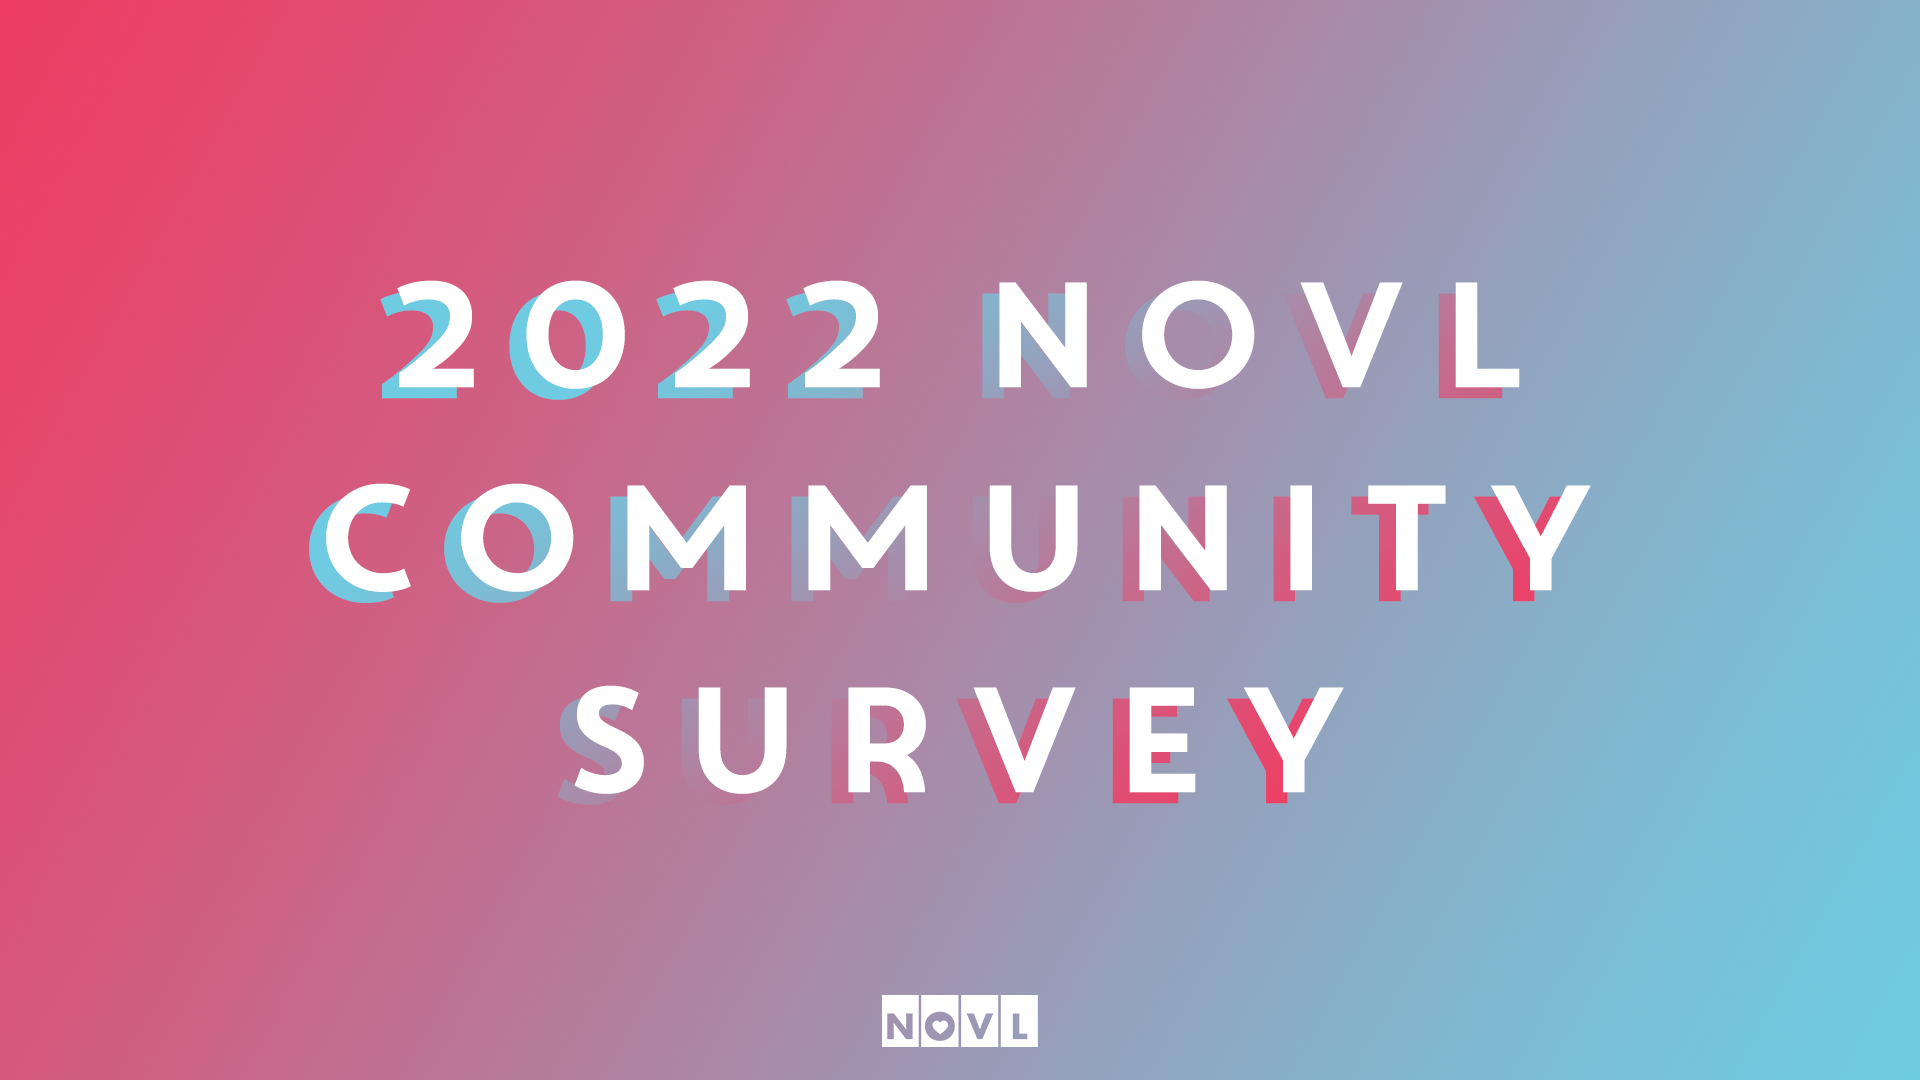 NOVL Blog - 2022 NOVL Community Survey